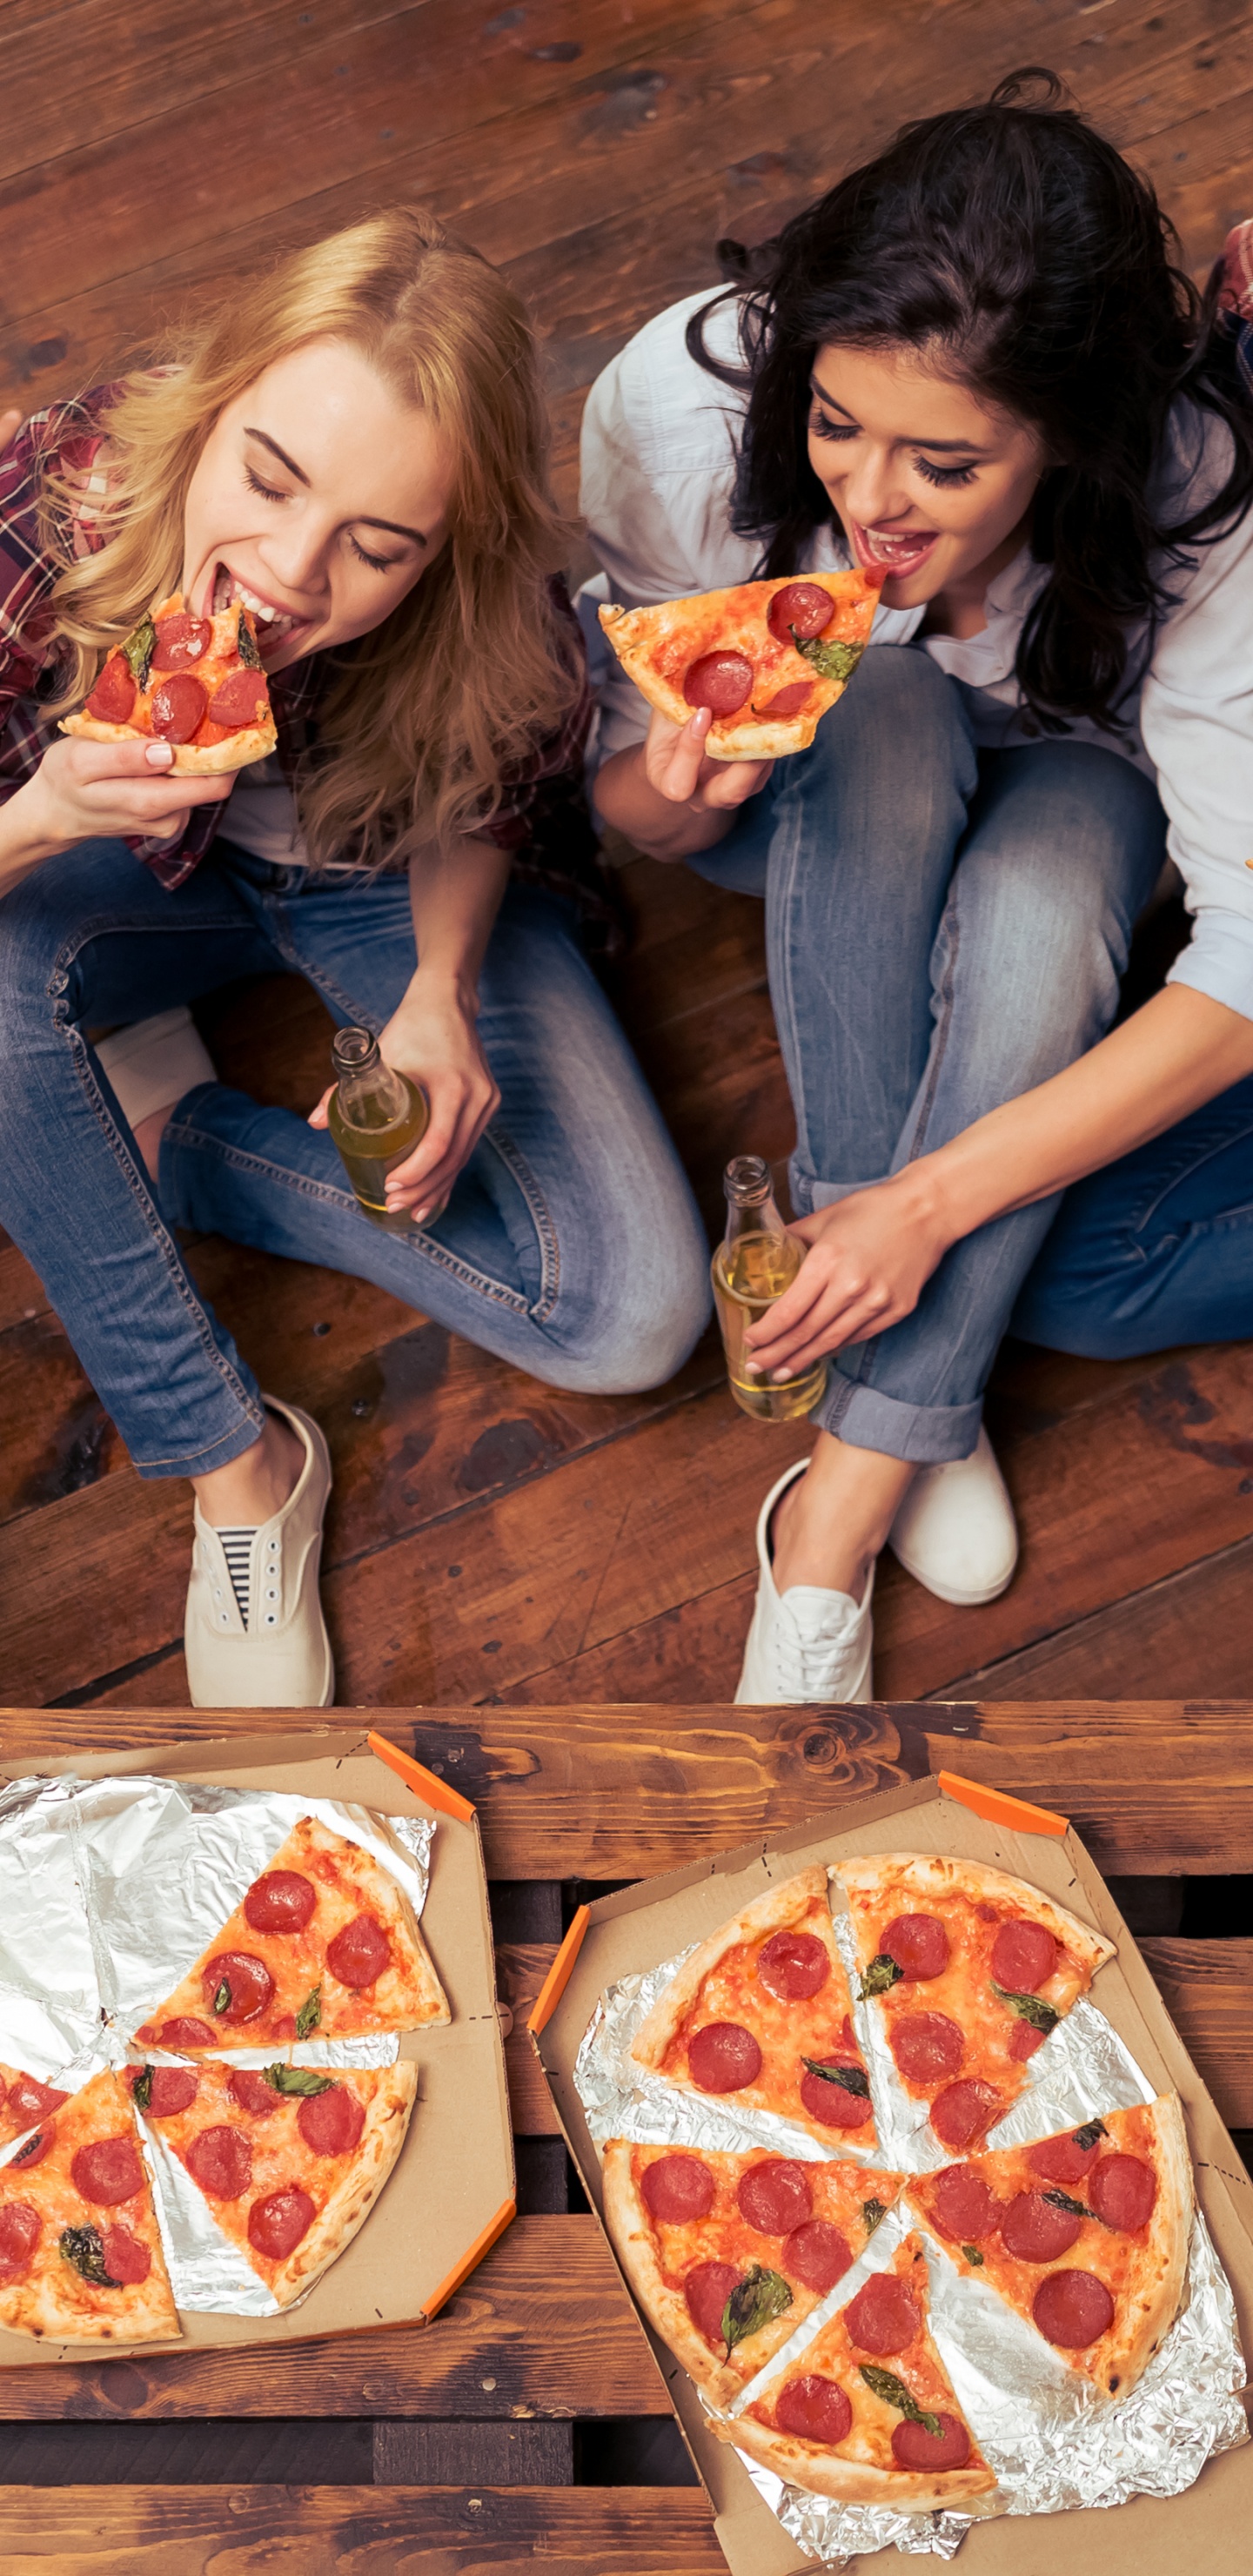 披萨, 意大利菜, 吃, 乐趣, 食品 壁纸 1440x2960 允许